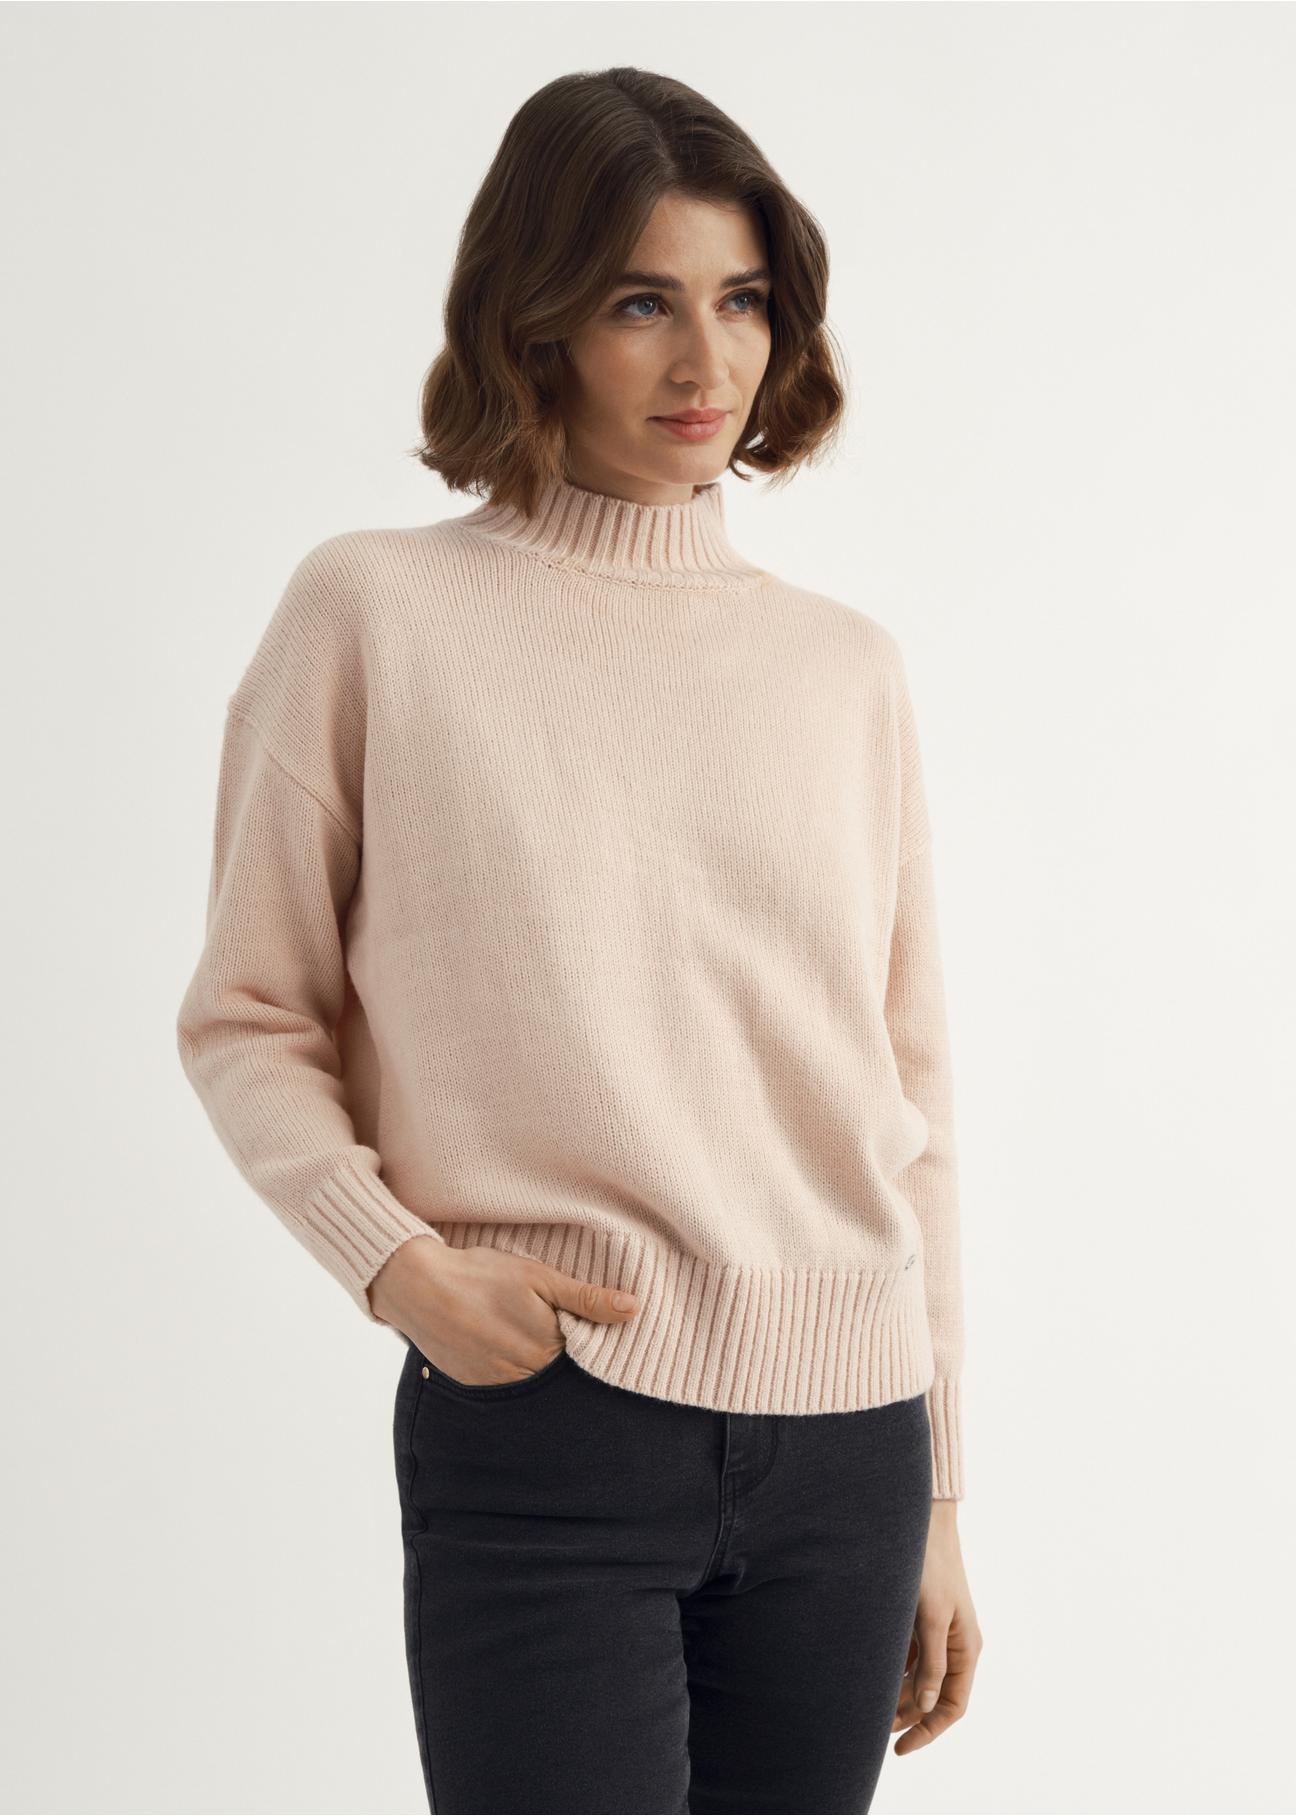 Jasnoróżowy sweter z golfem damski SWEDT-0186-34(Z23)